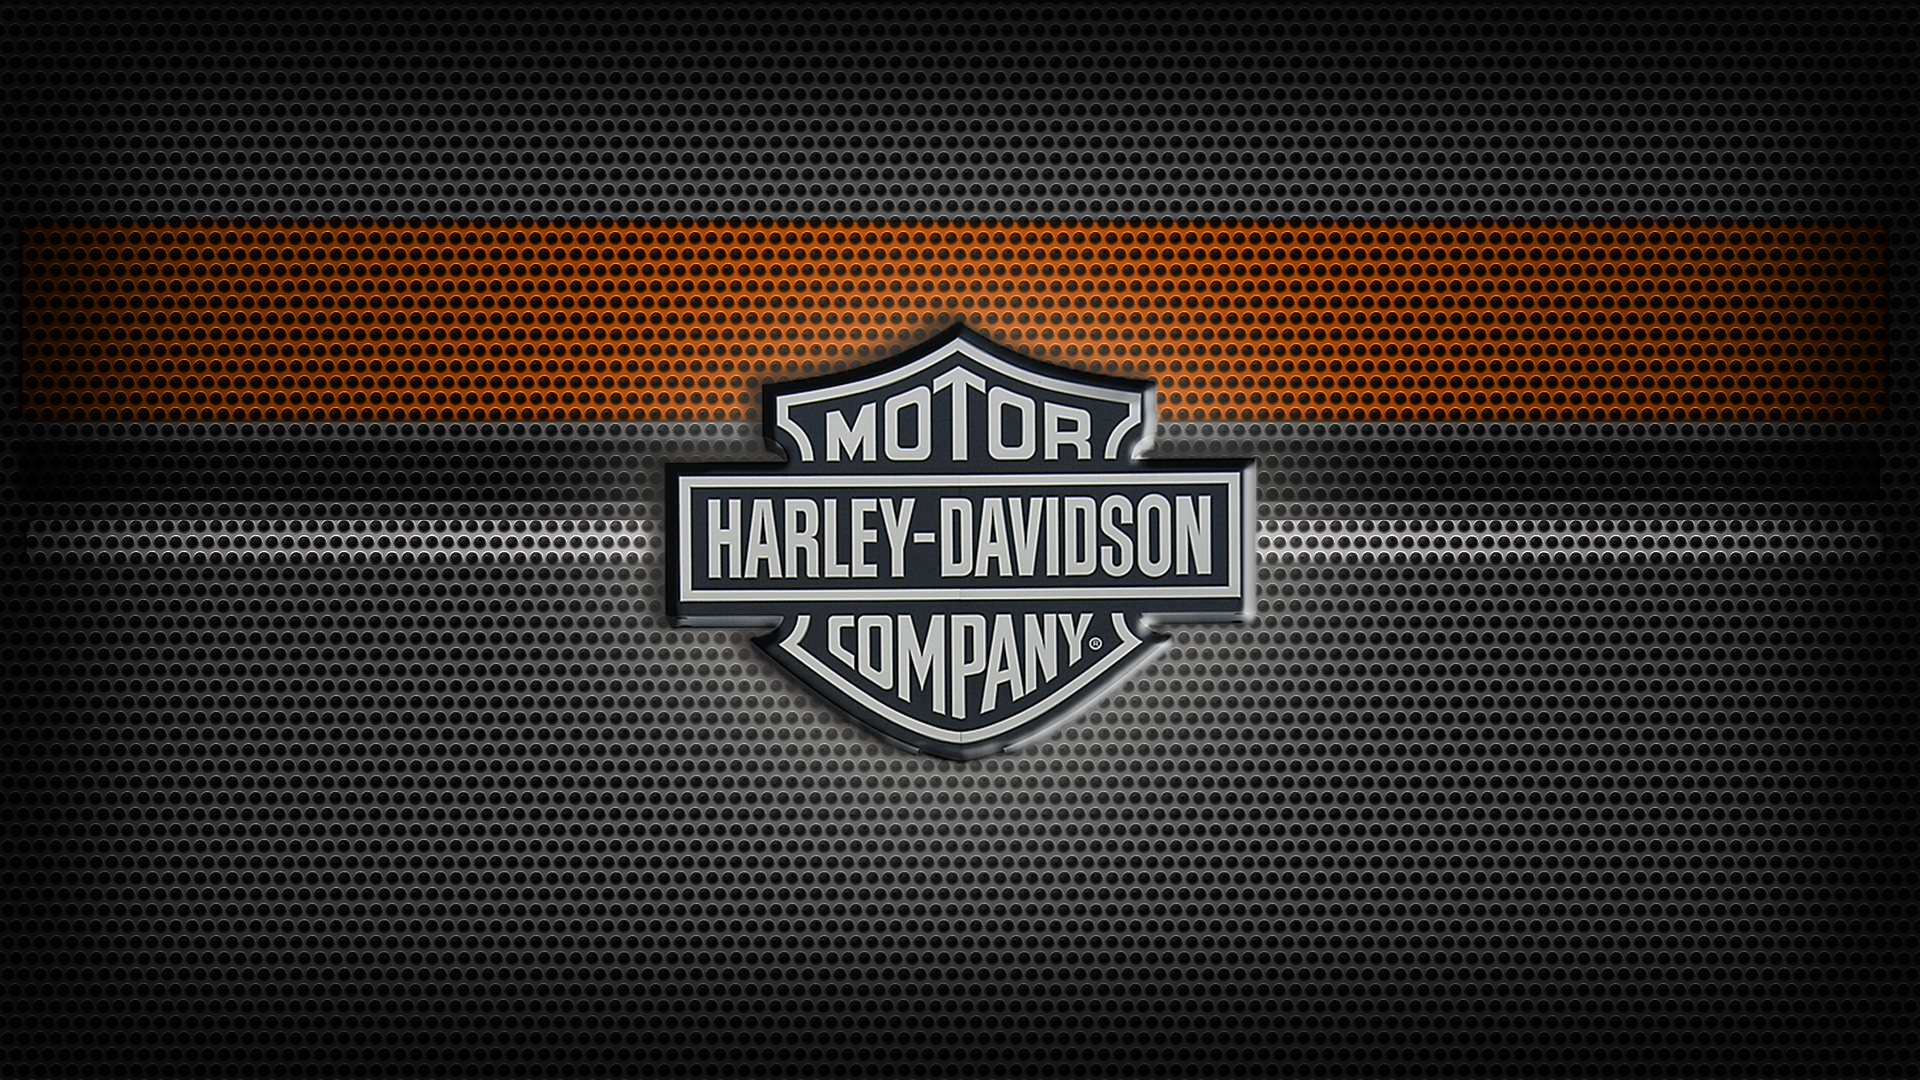 fond d'écran harley davidson logo,police de caractère,texte,modèle,conception,emblème